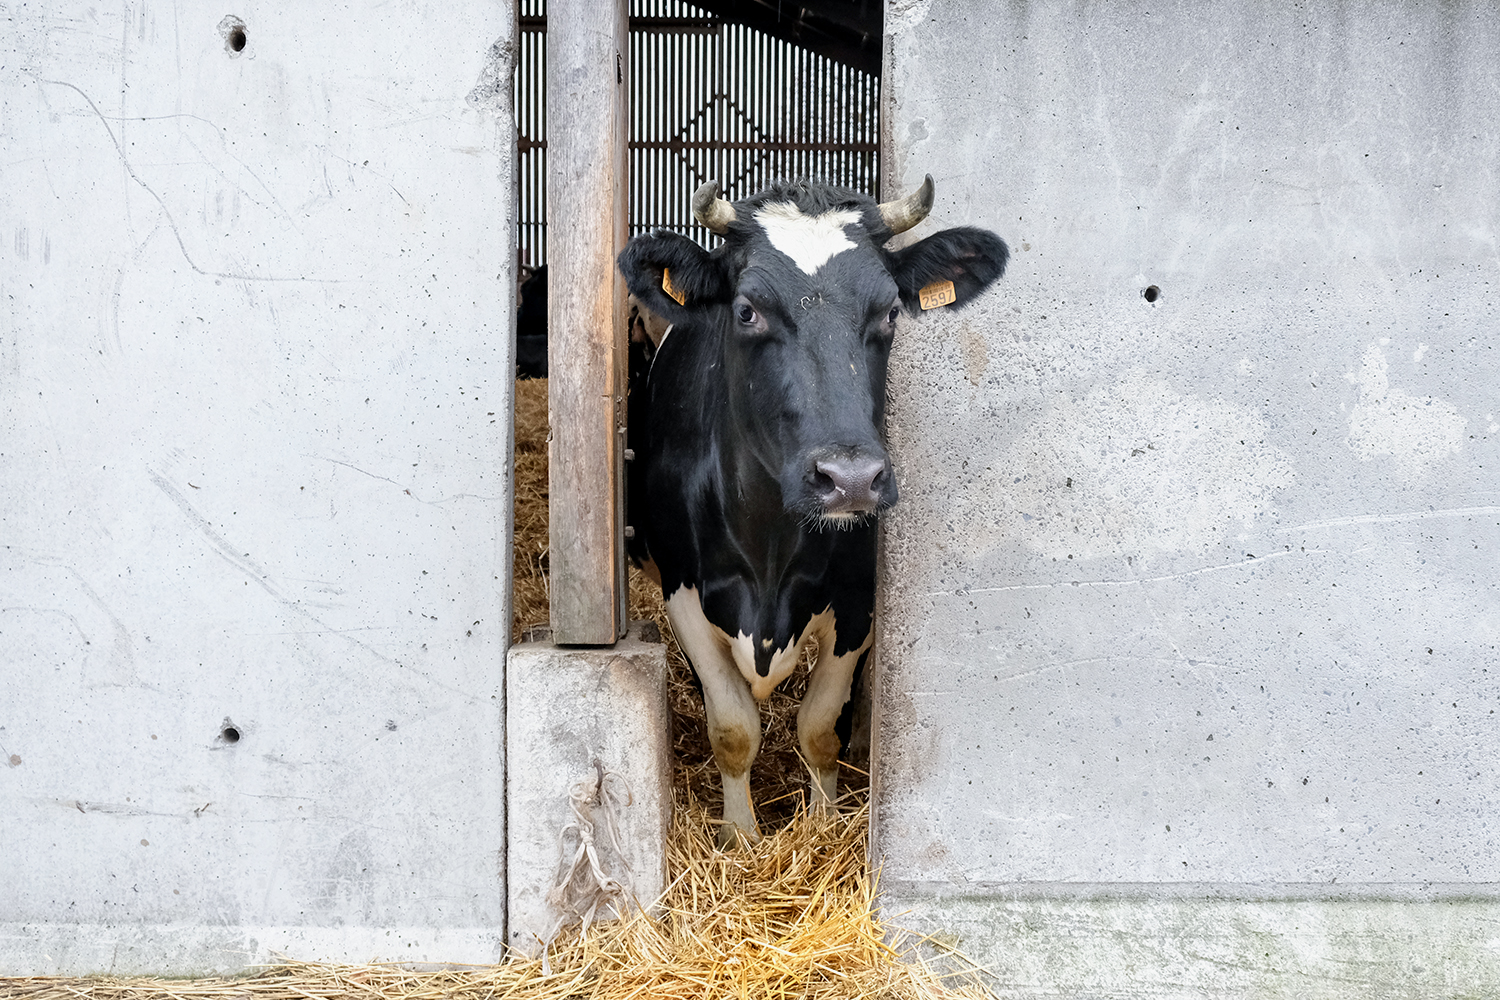 Les vaches vivent une dizaine d’années avant d’être conduites à l’abattoir.